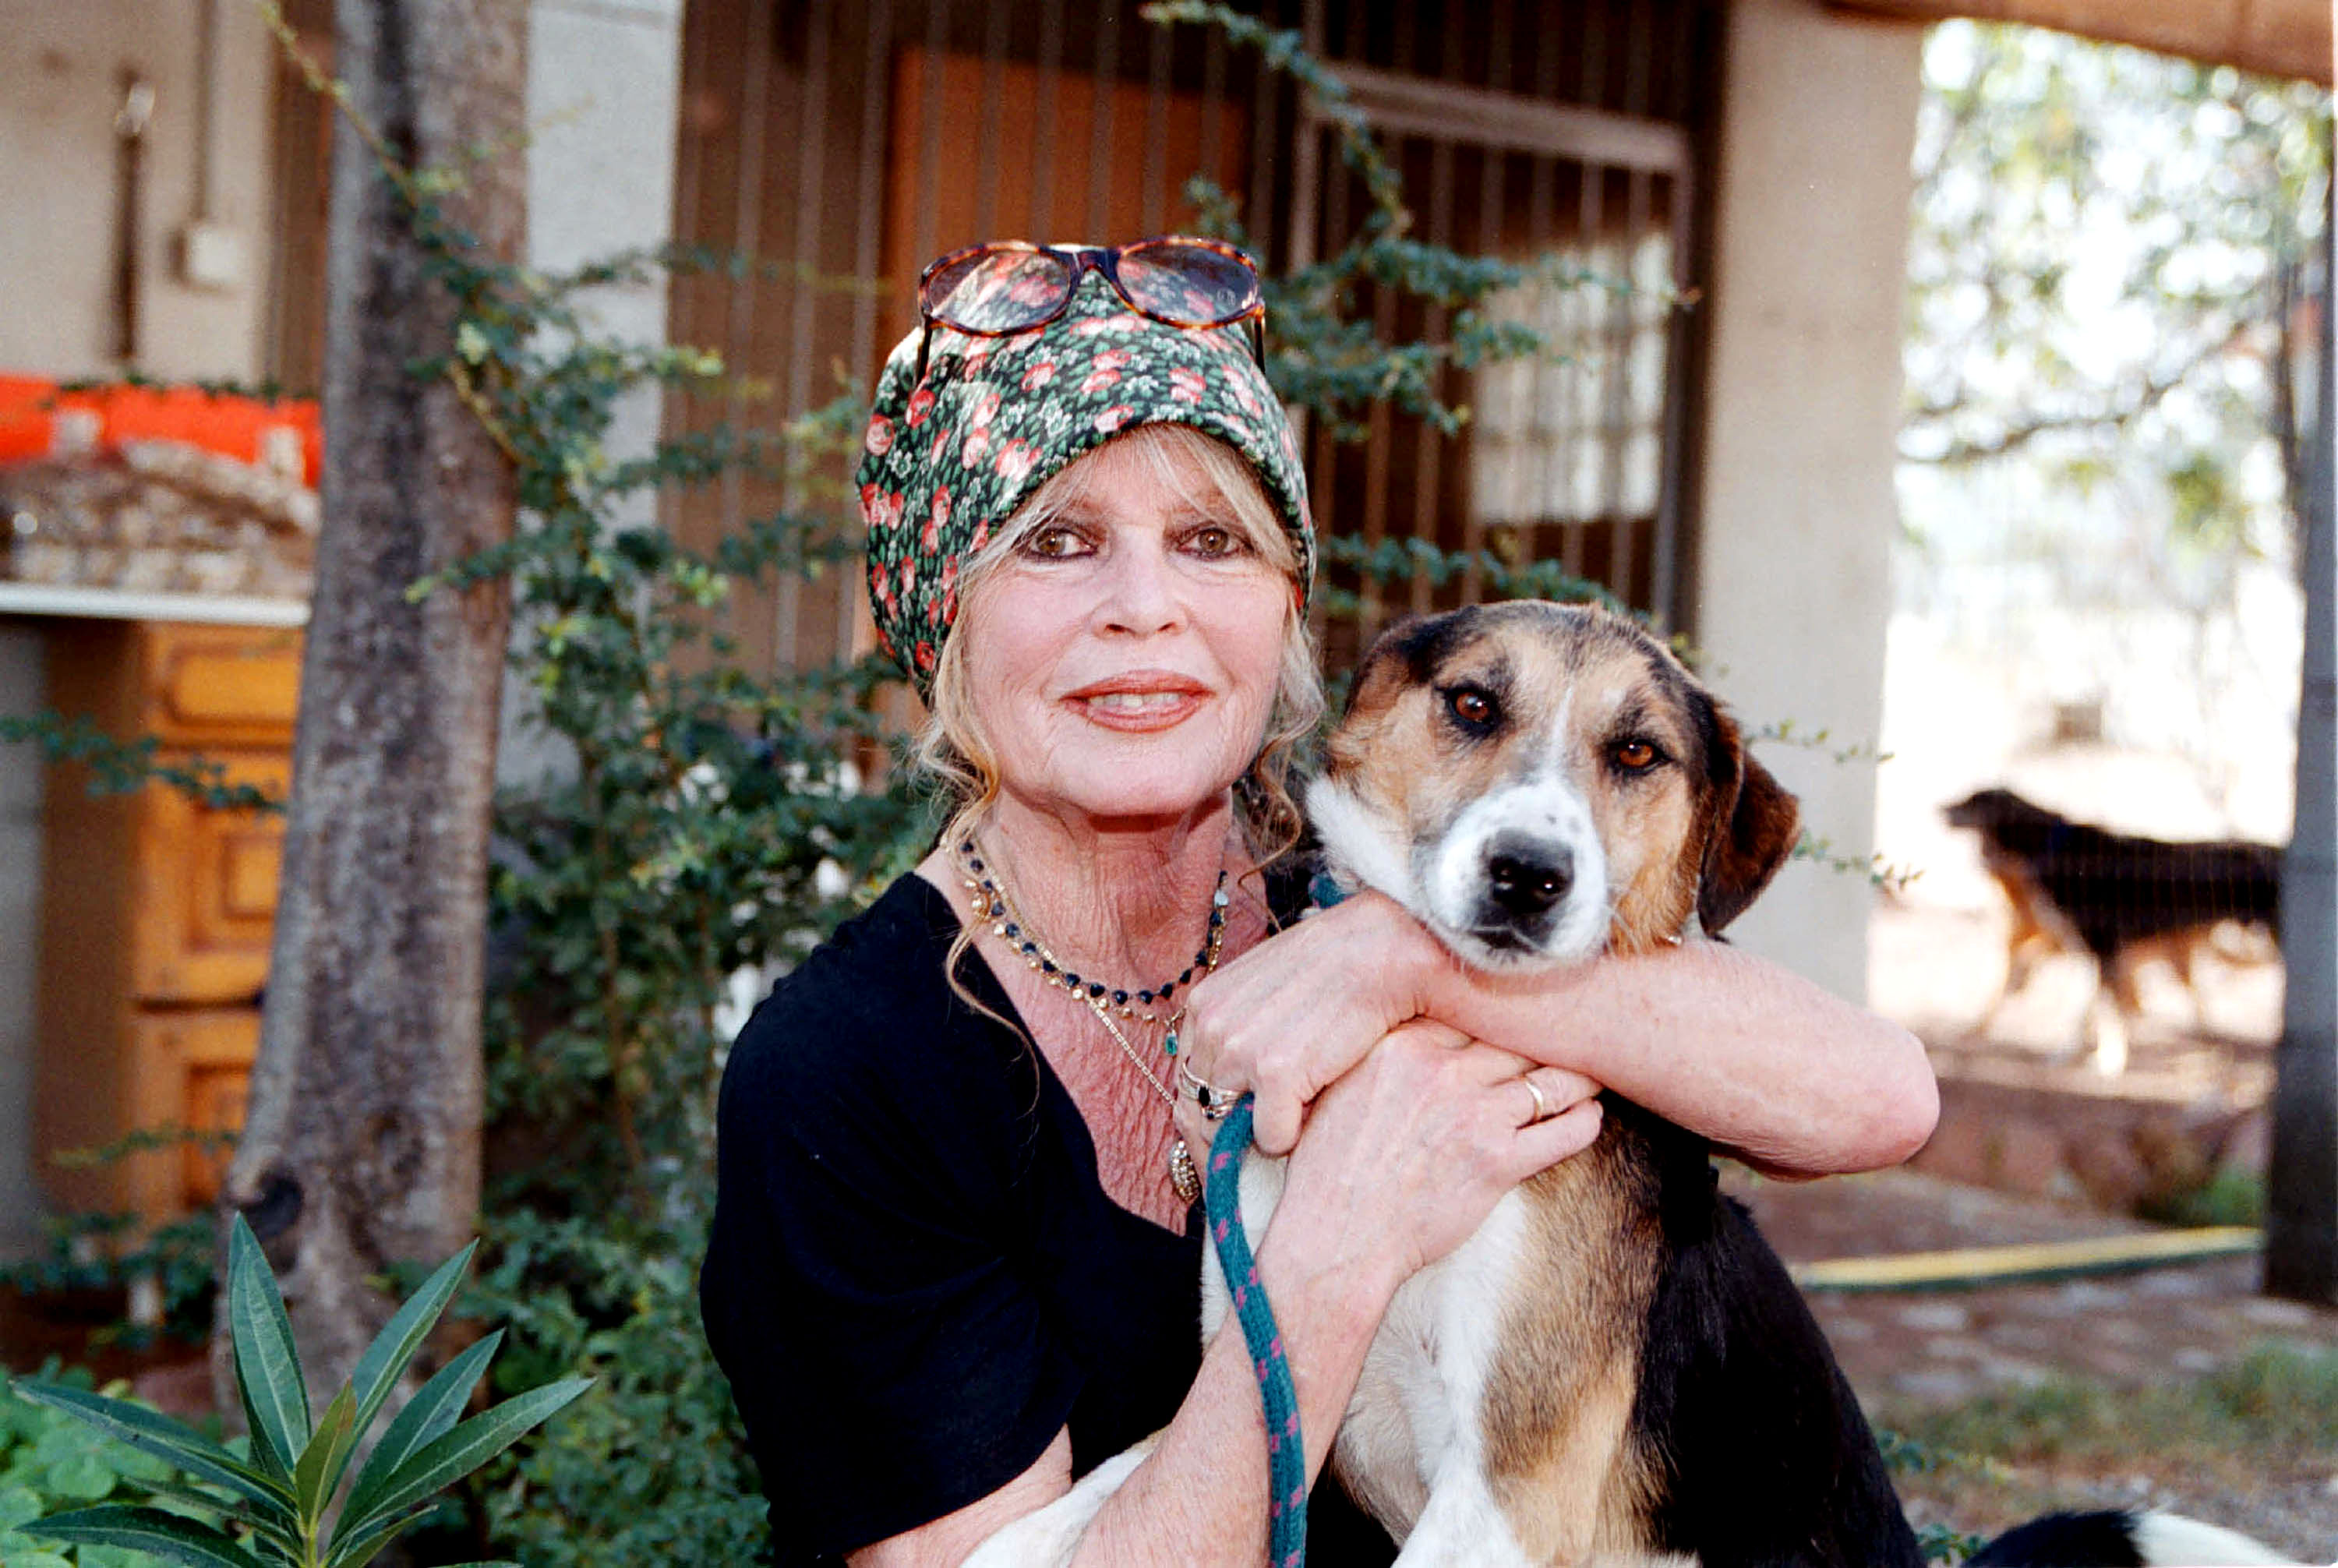 Brigitte Bardot dans son refuge pour chiens "The Nice Dogs" à Paris, France, le 7 octobre 2001 | Source : Getty Images